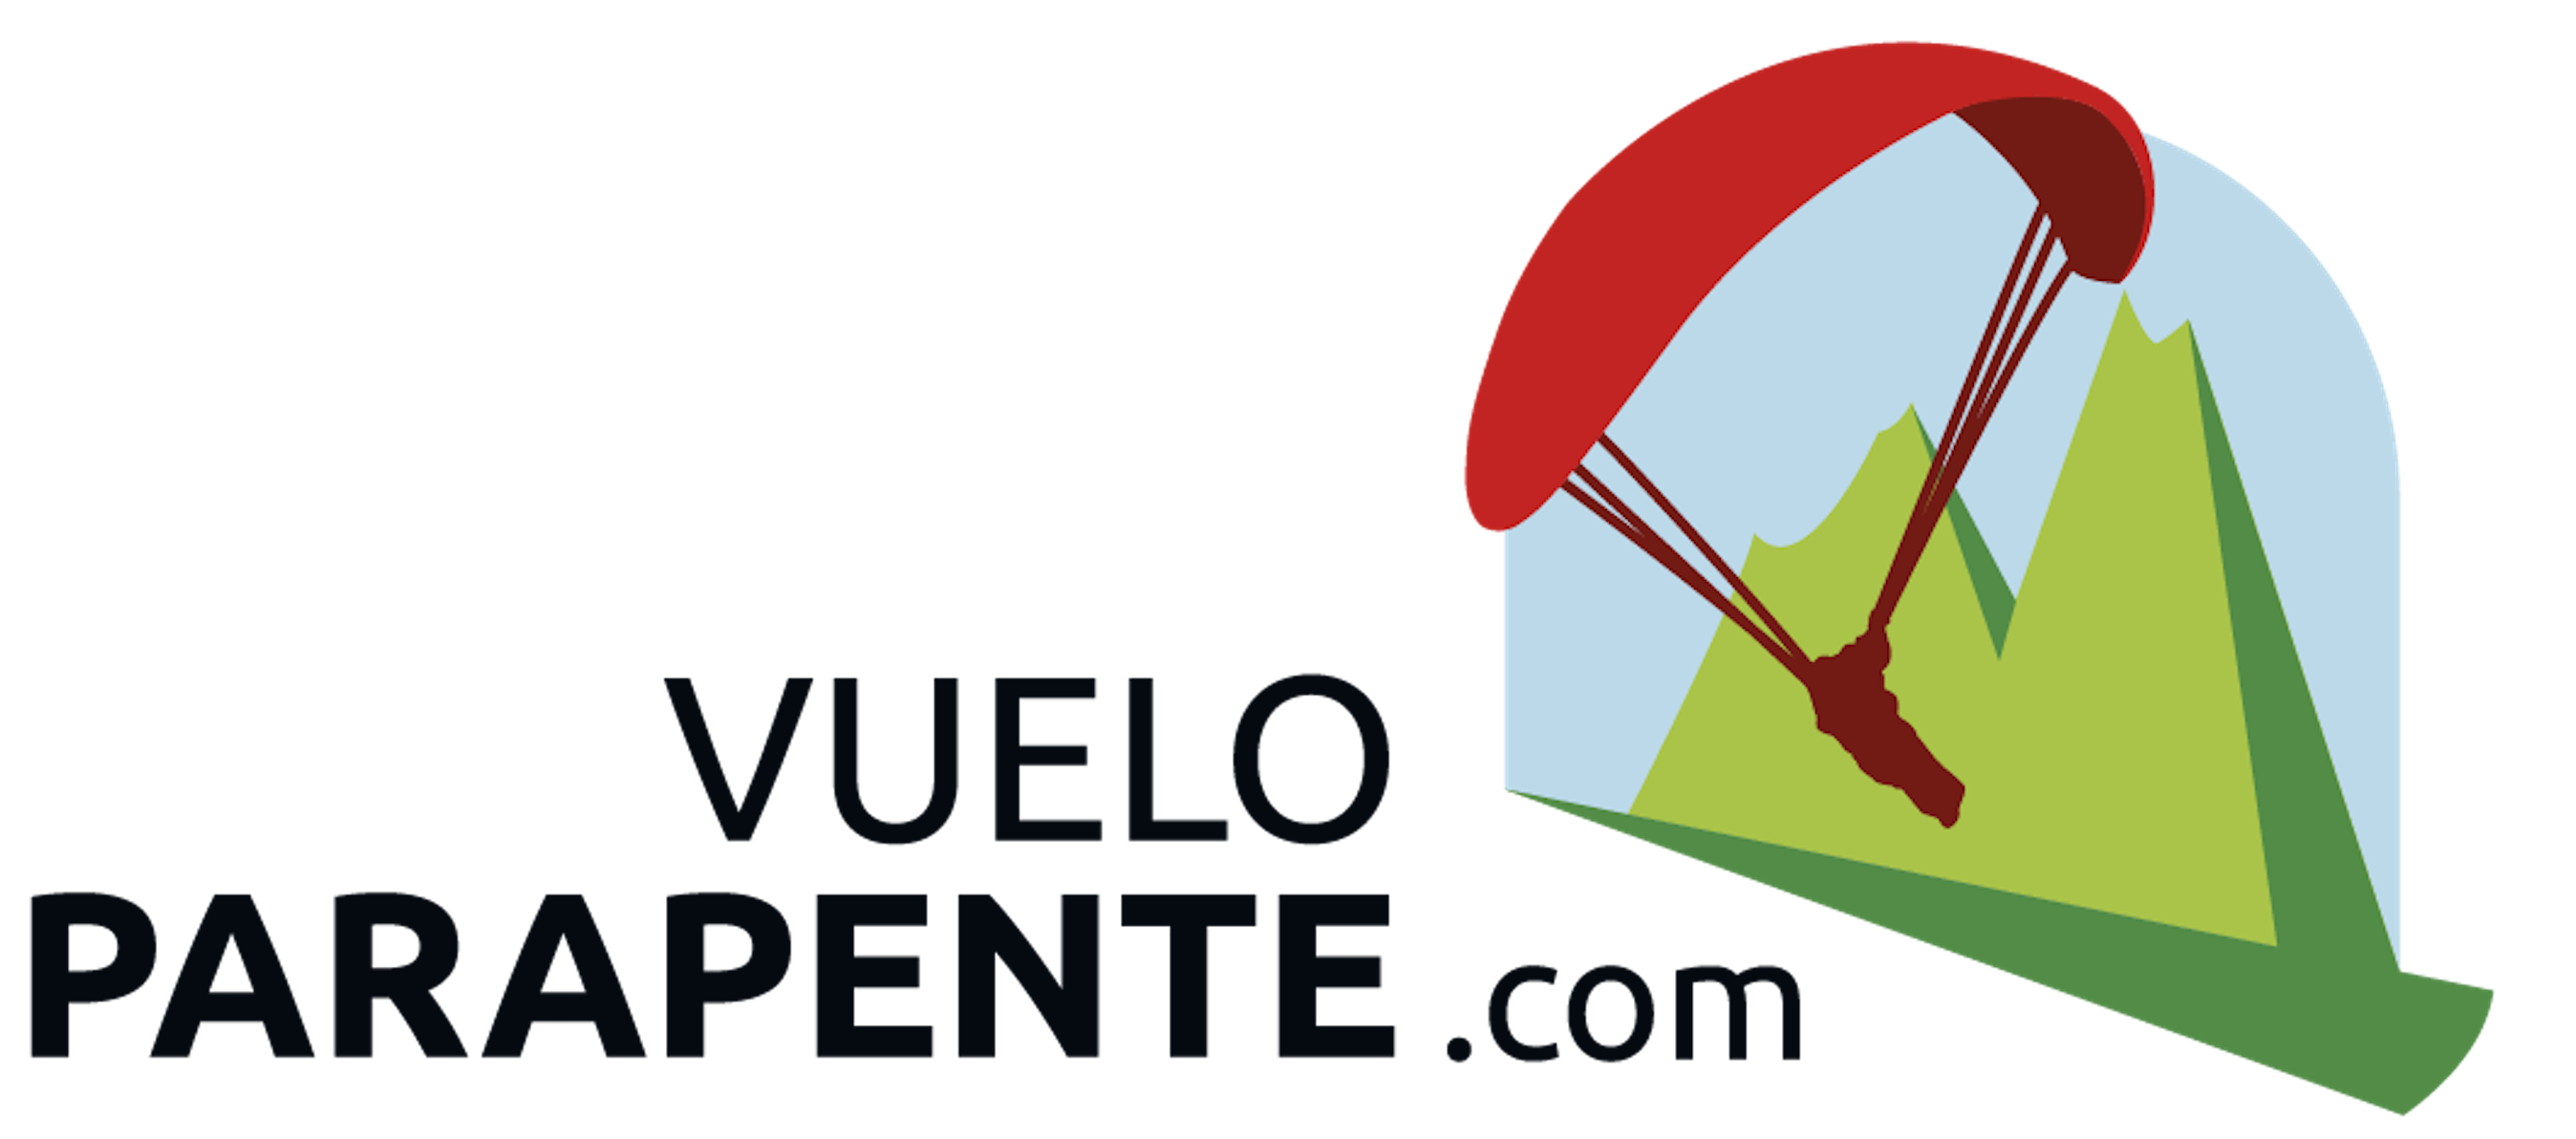 VueloParapente: Descubre las Mejores Experiencias de Parapente en España